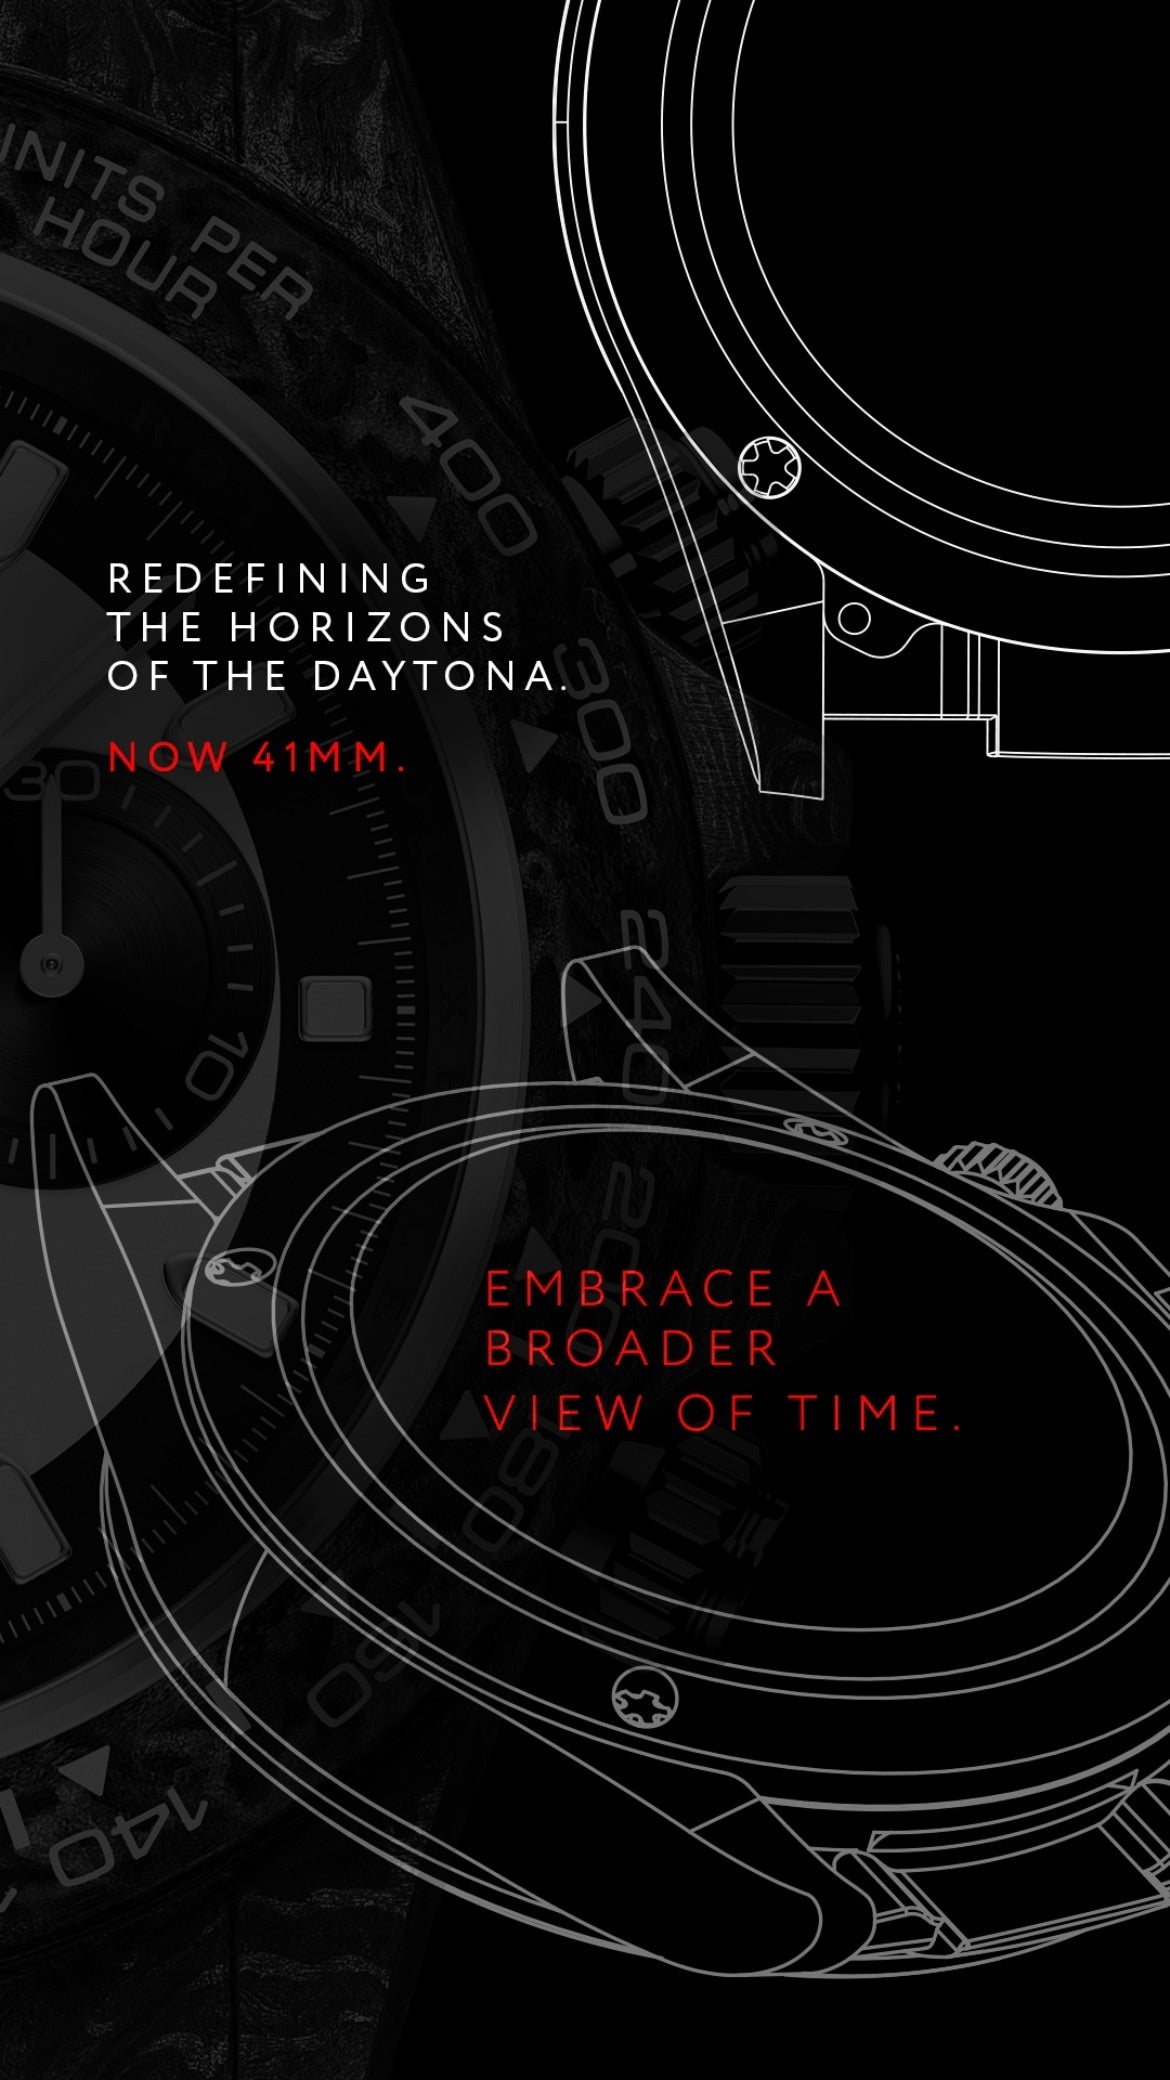 Rolex Daytona 41mm DiW Watch First In Rolex WatchMaking 勞力士地通拿41毫米 | WORLDTIMER